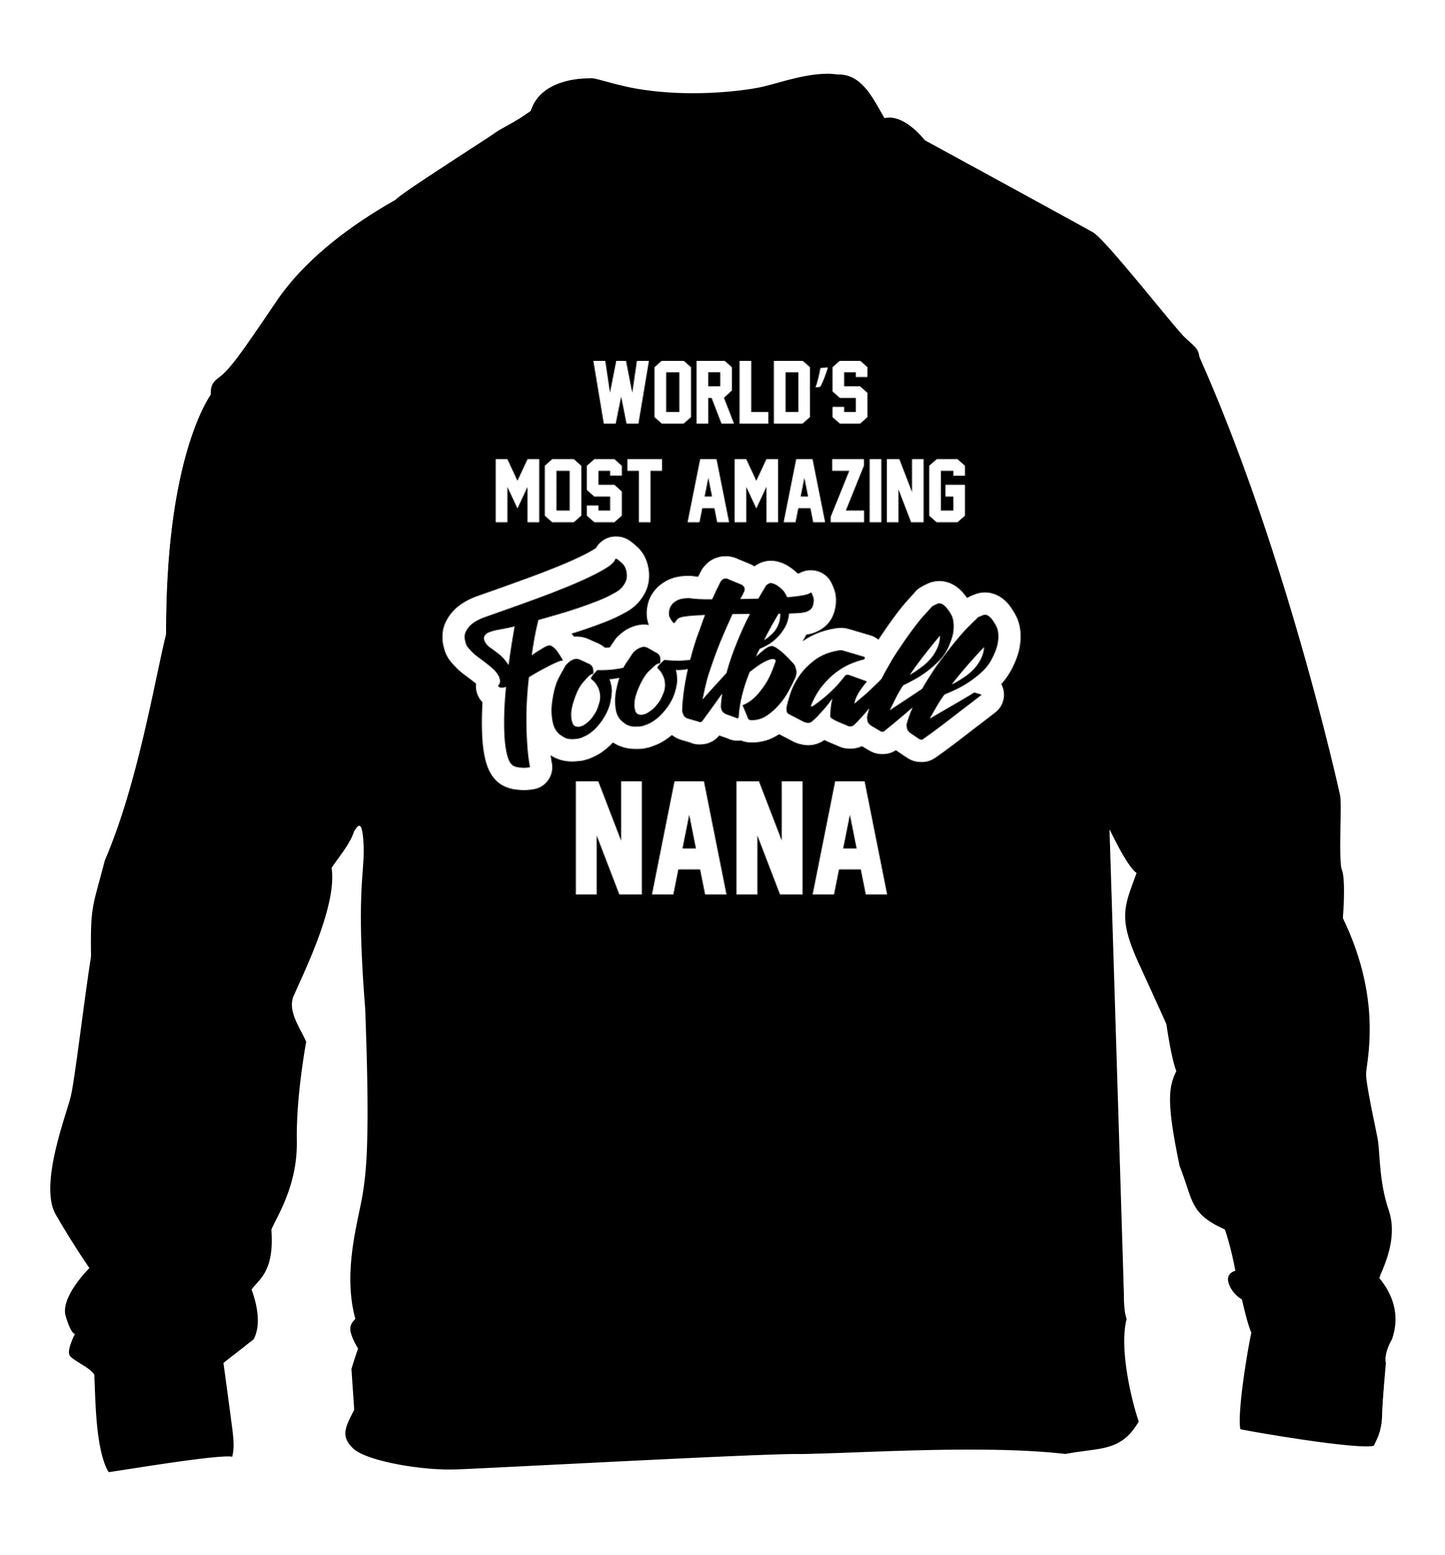 Worlds most amazing football nana children's black sweater 12-14 Years